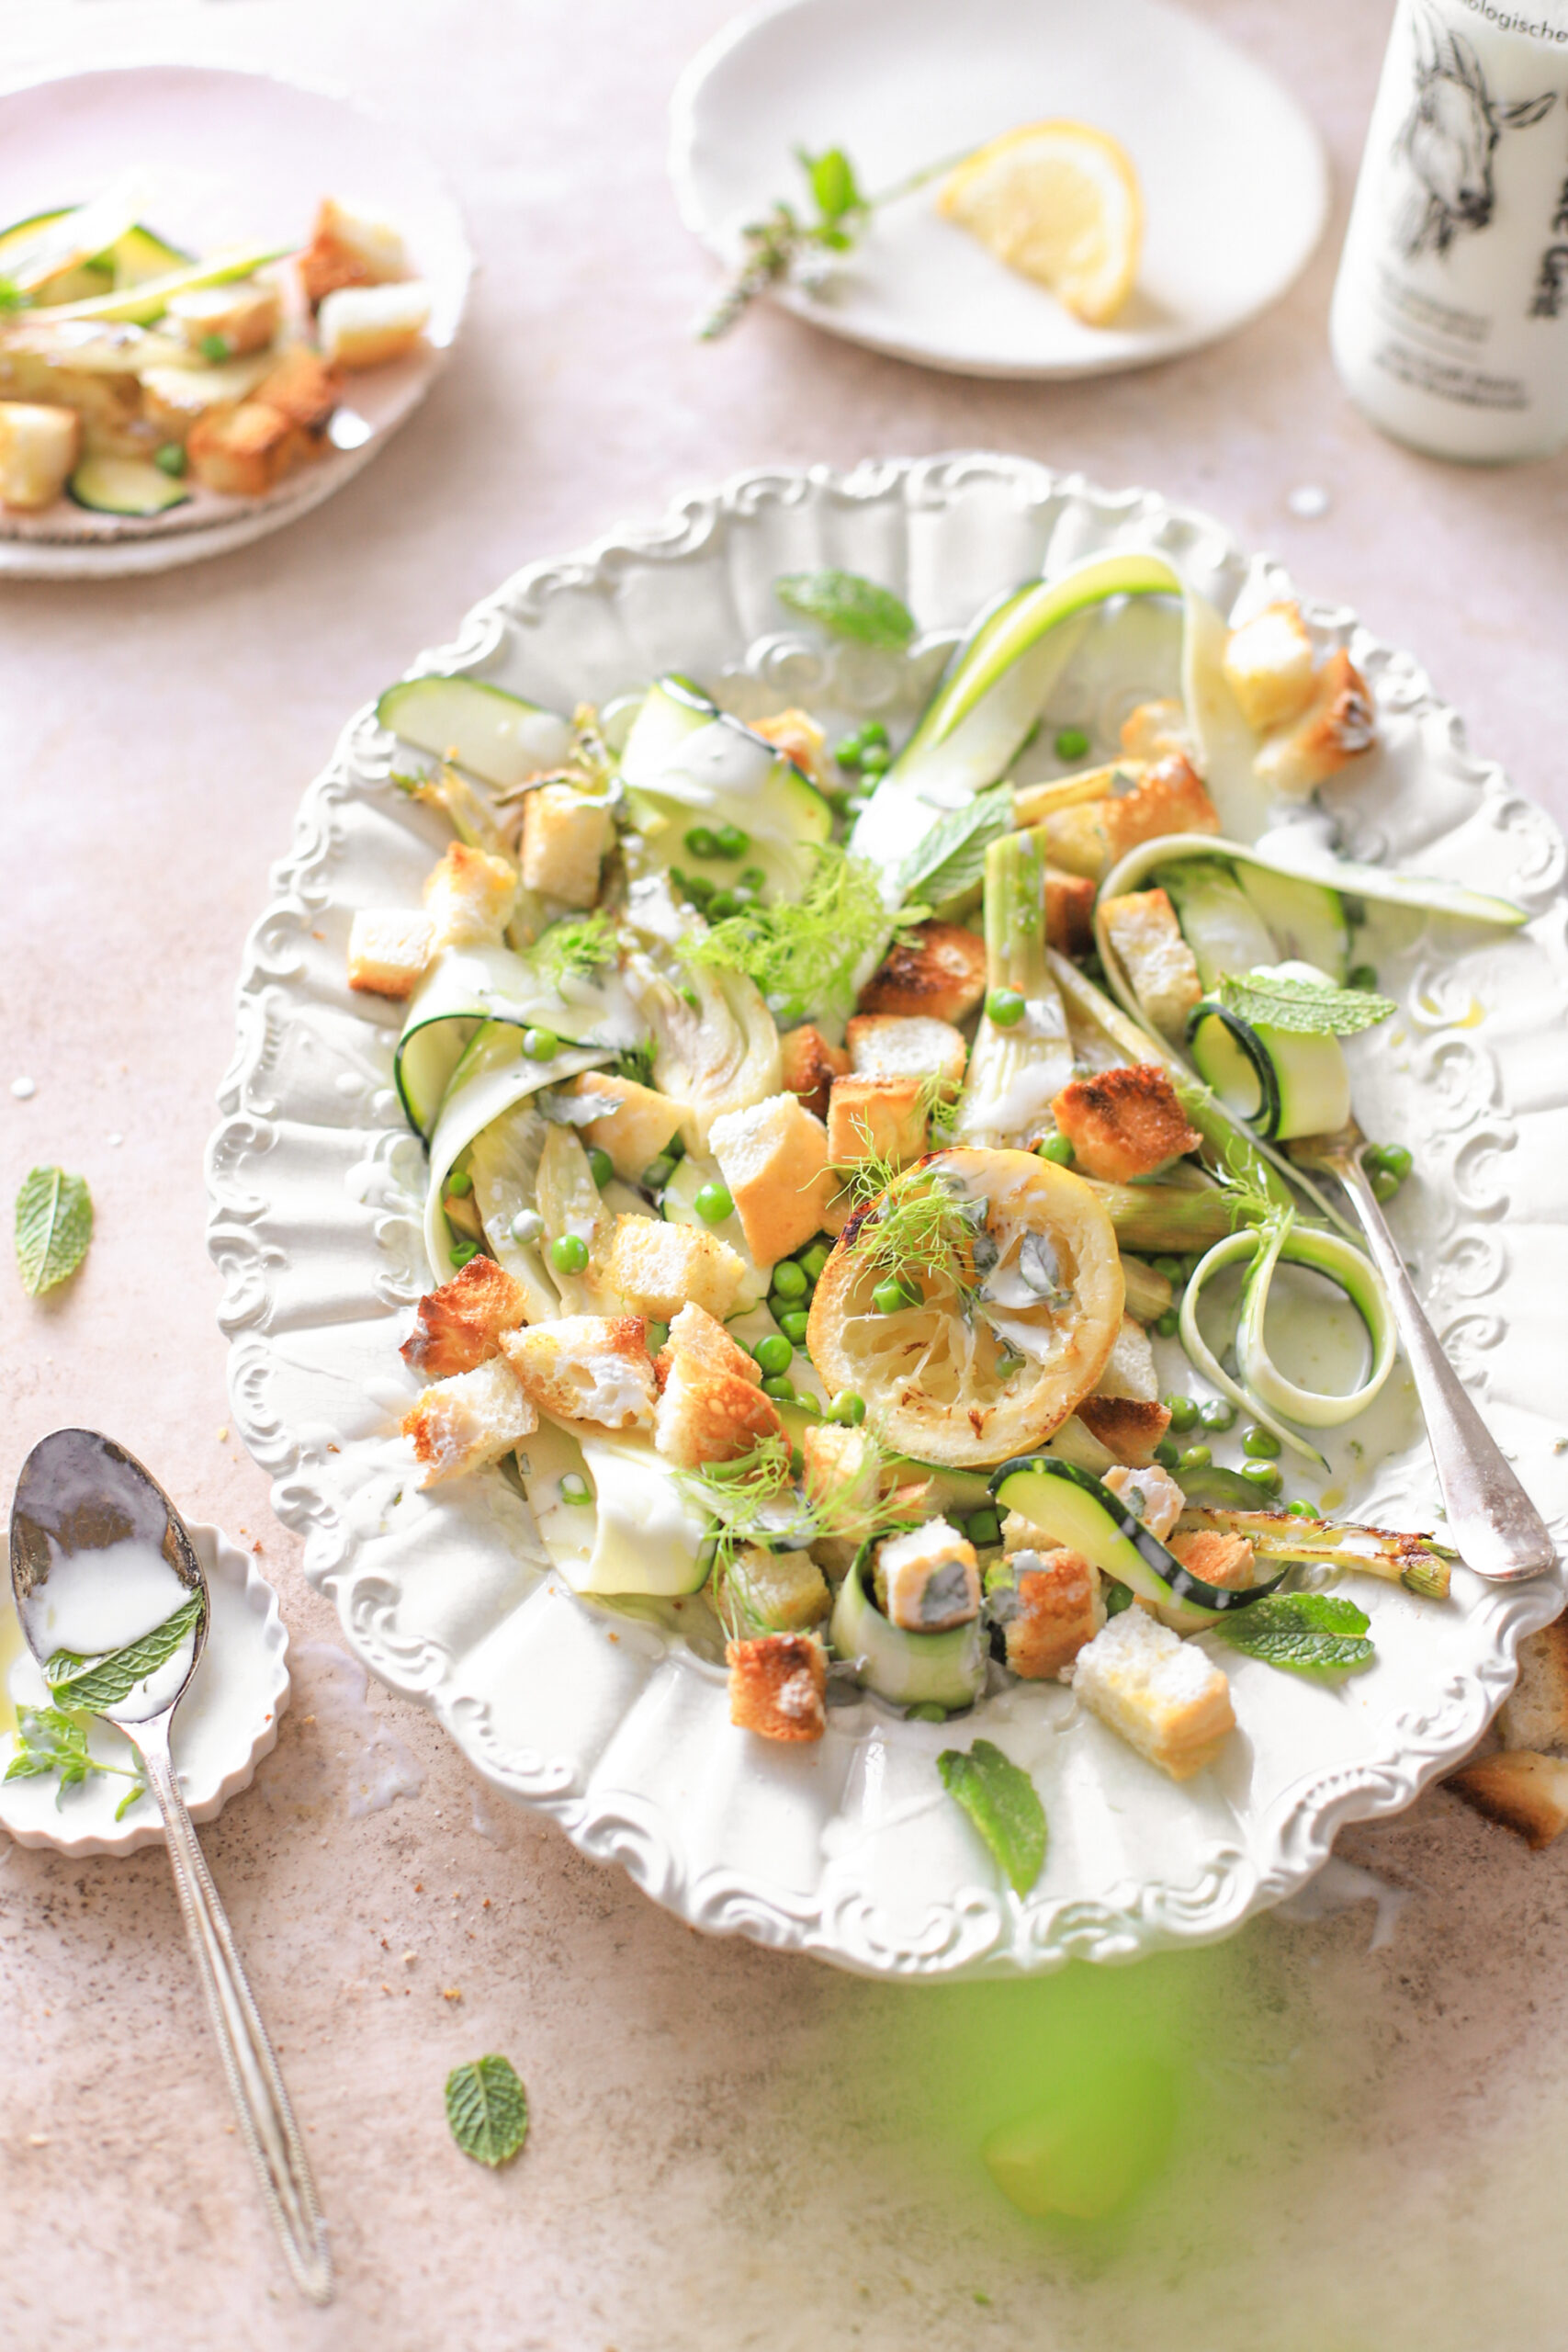 groene salade geitenyoghurt dressing croutons venkel gezond